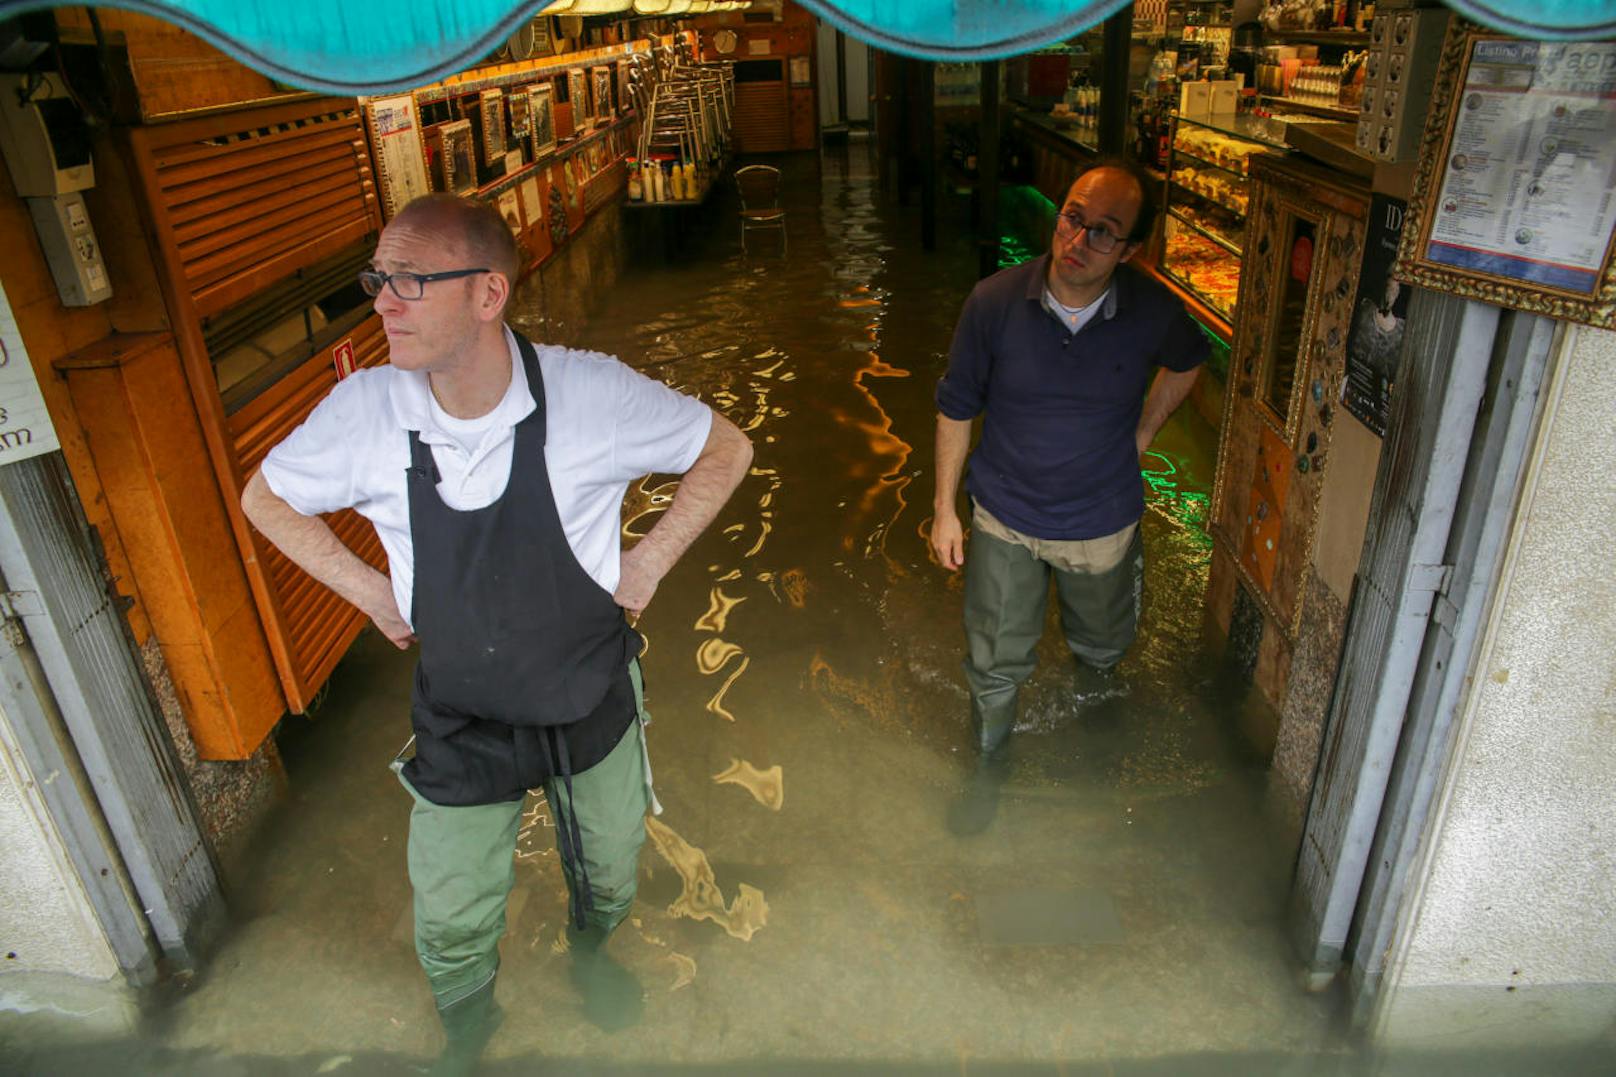 Hochwasser in Venedig am 29. Oktober 2018